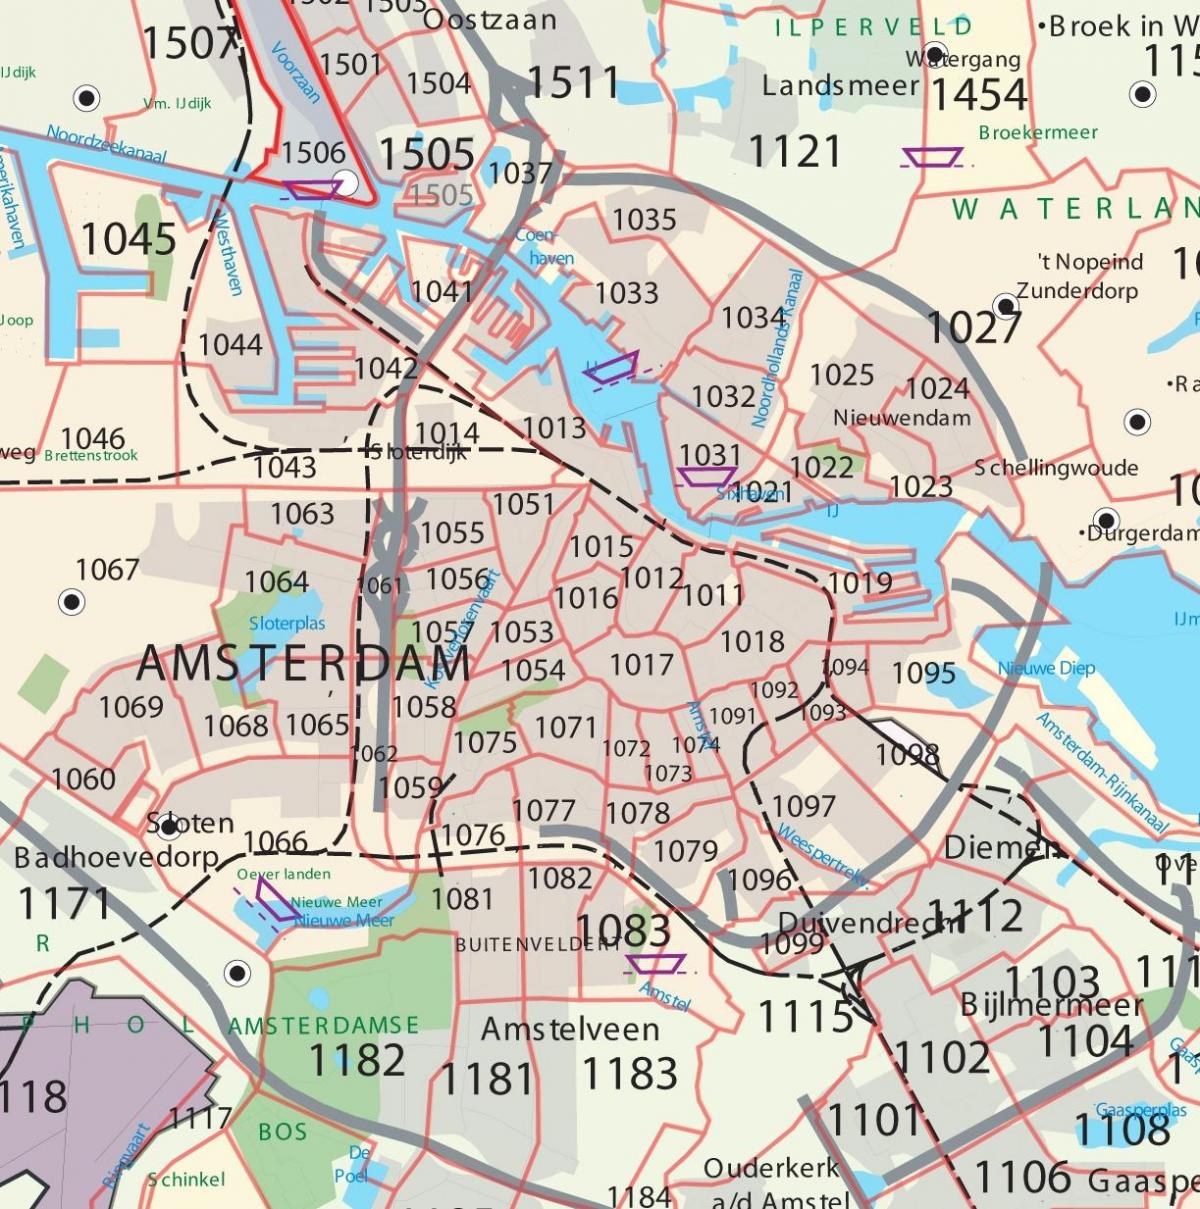 خريطة أمستردام الرمز البريدي